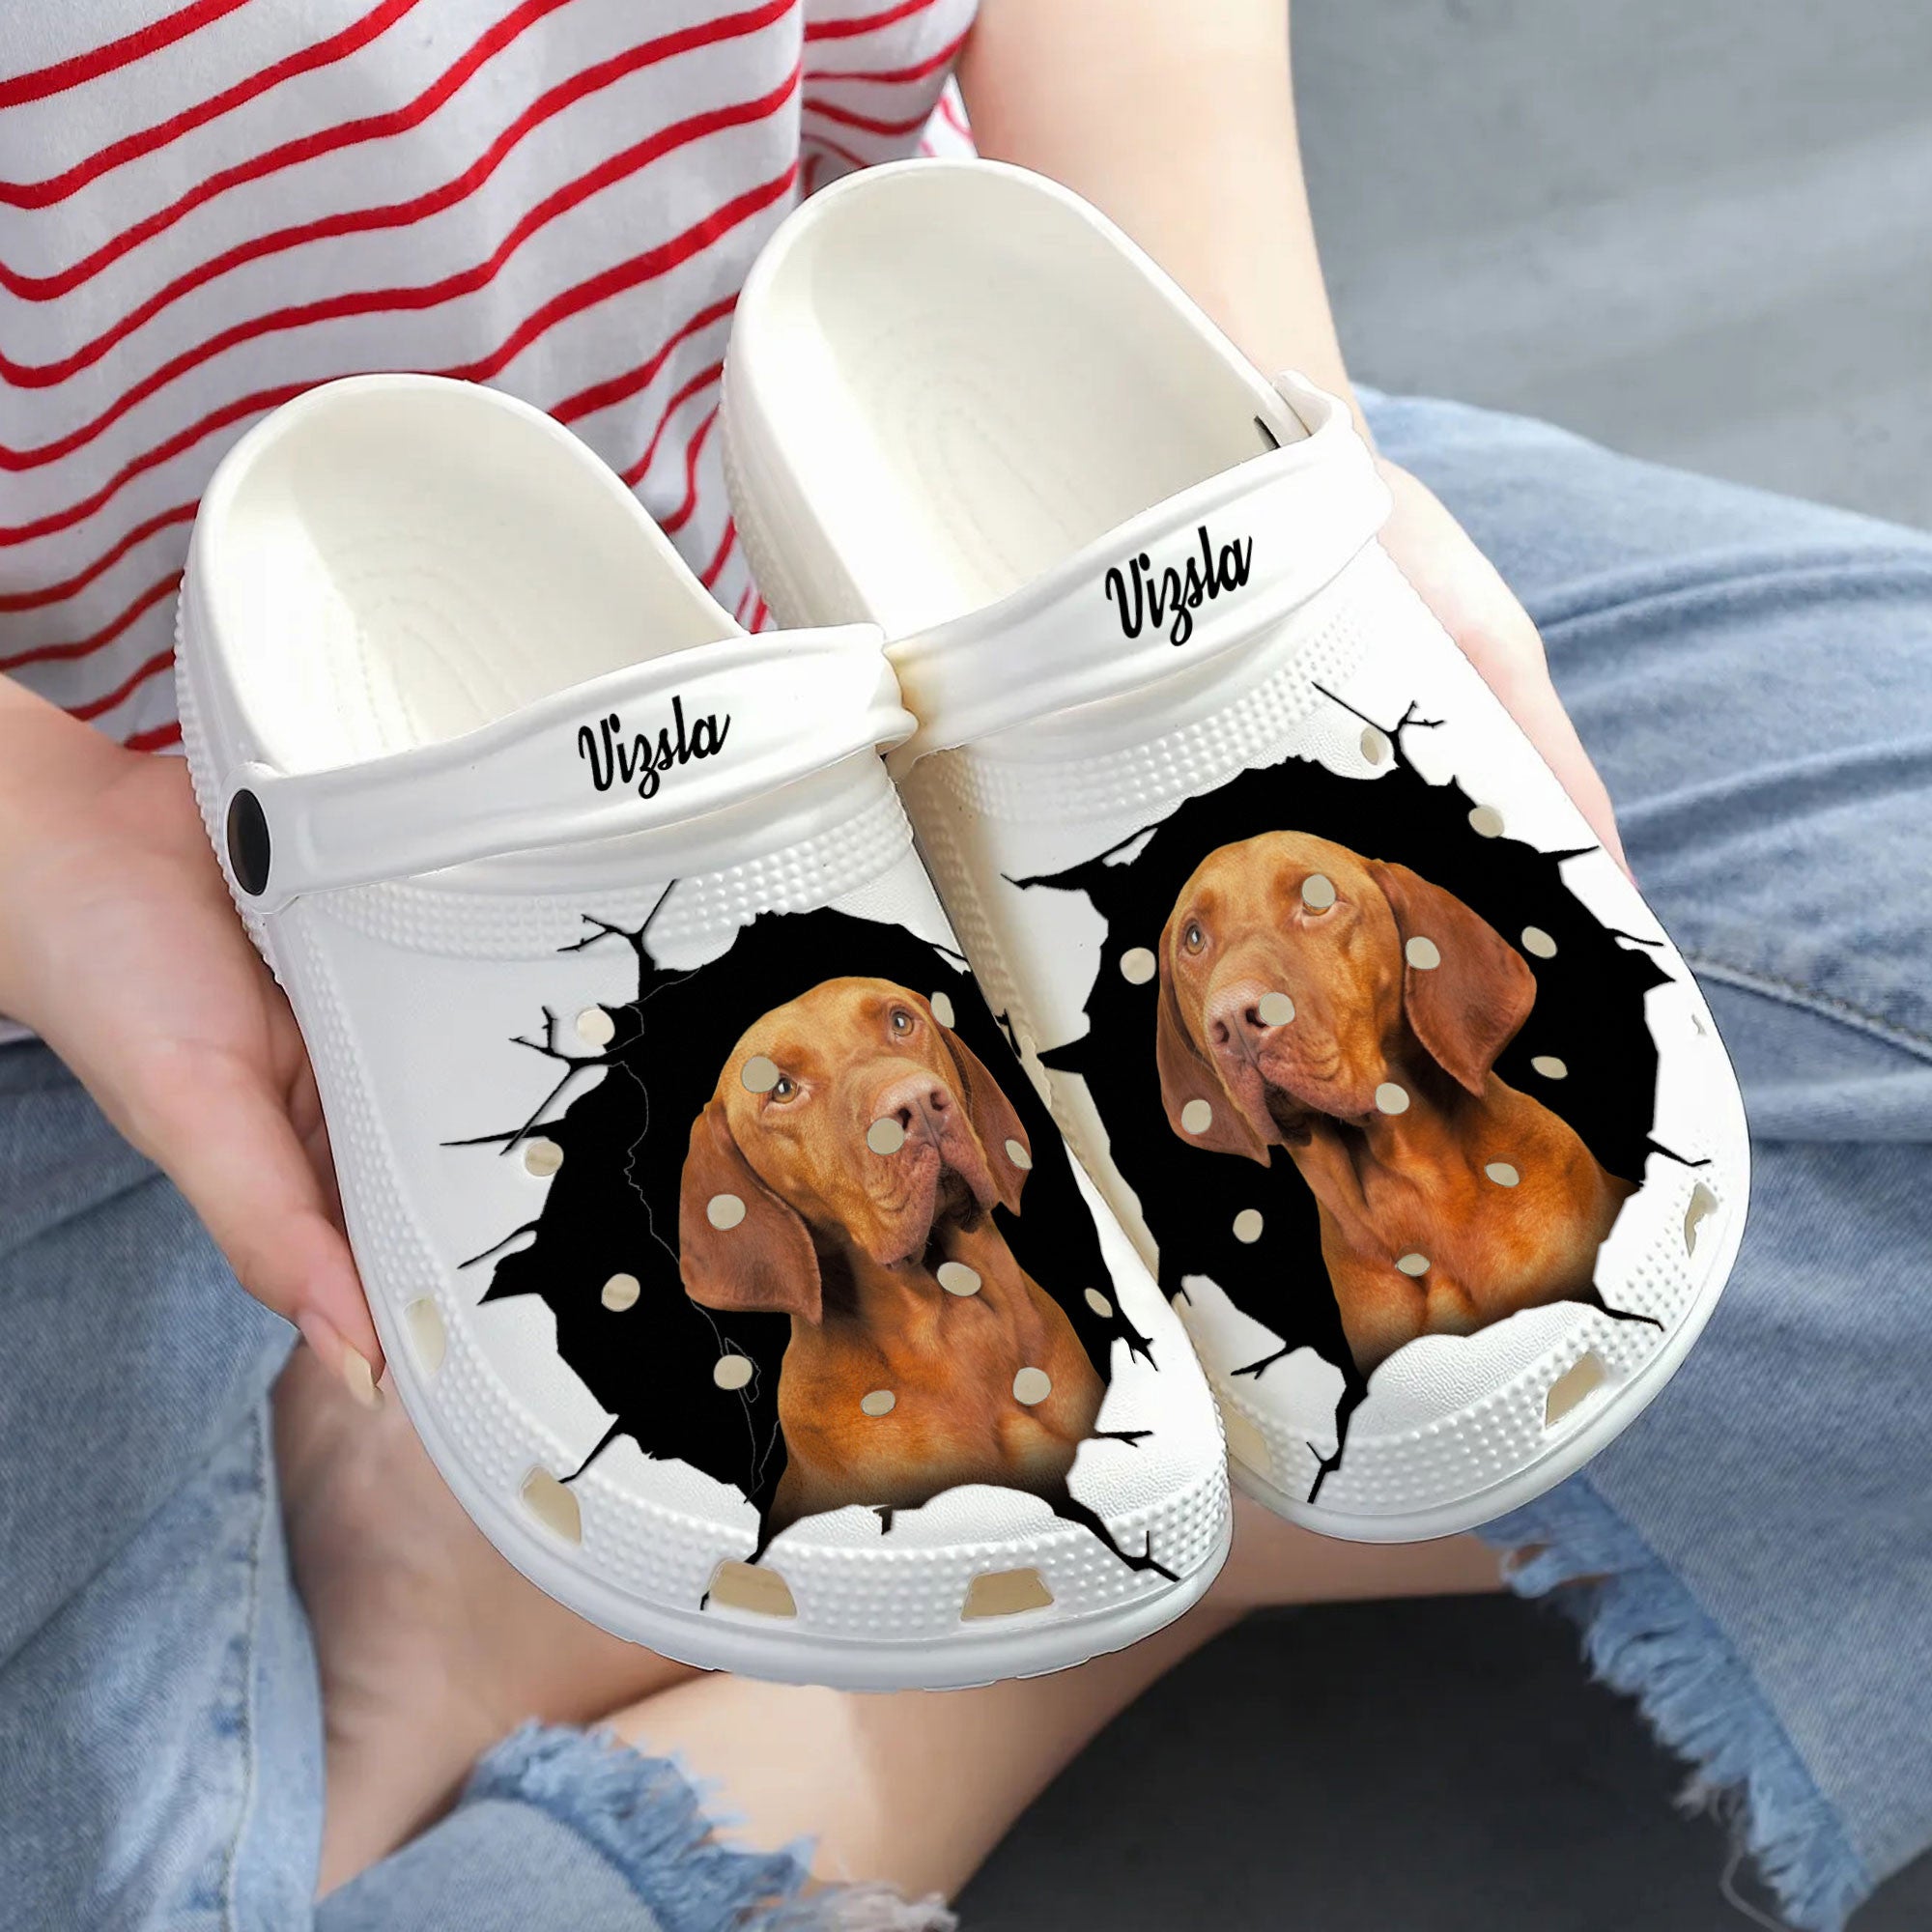 Vizsla - 3D Graphic Custom Name Crocs Shoes